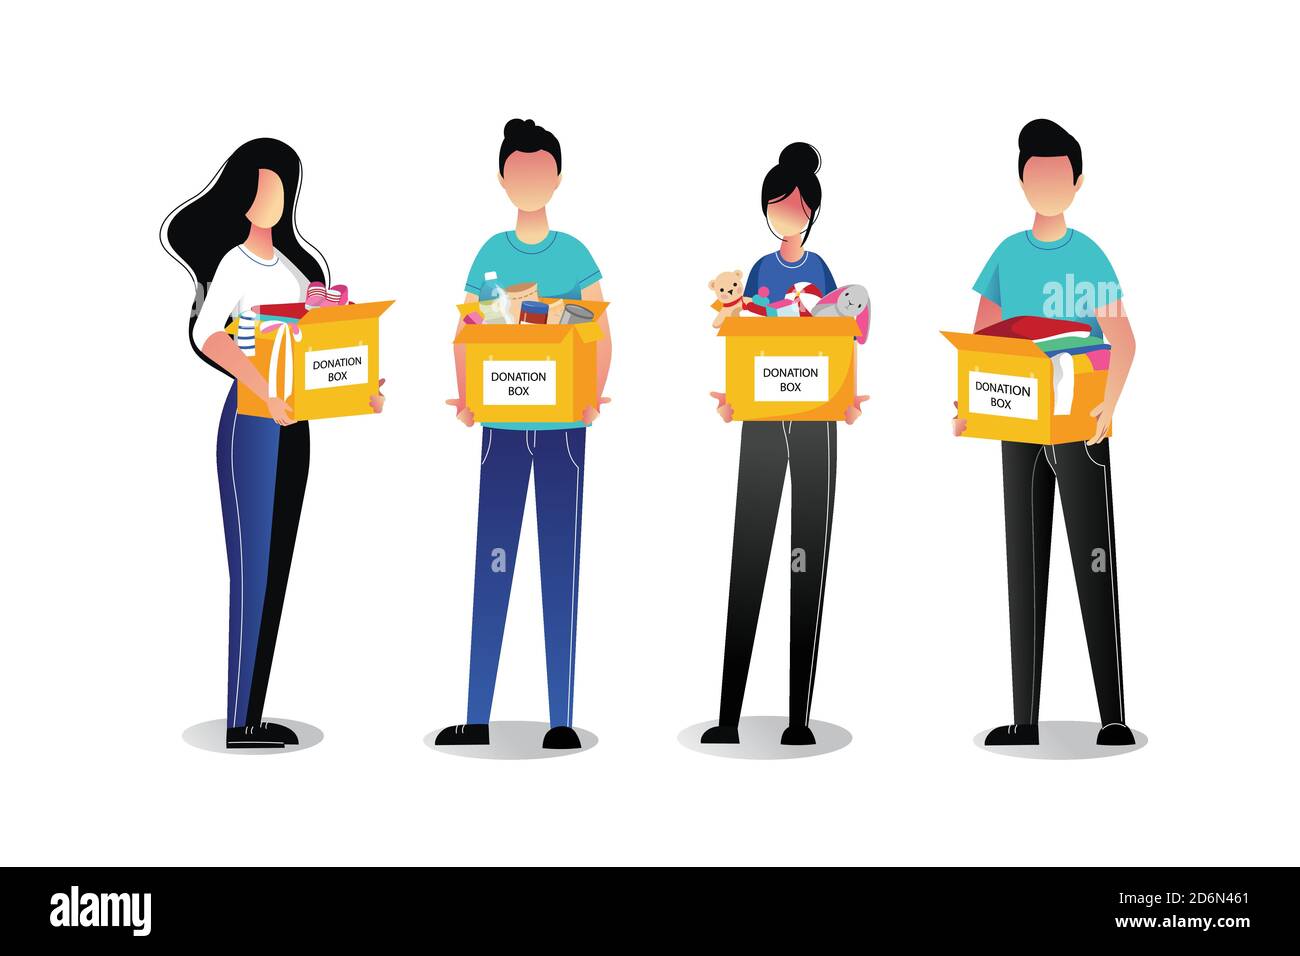 Volontari giovani con scatole di donazione, isolati su sfondo bianco. Illustrazioni vettoriali a fumetti piatti. Cura sociale e concetto di carità. Illustrazione Vettoriale